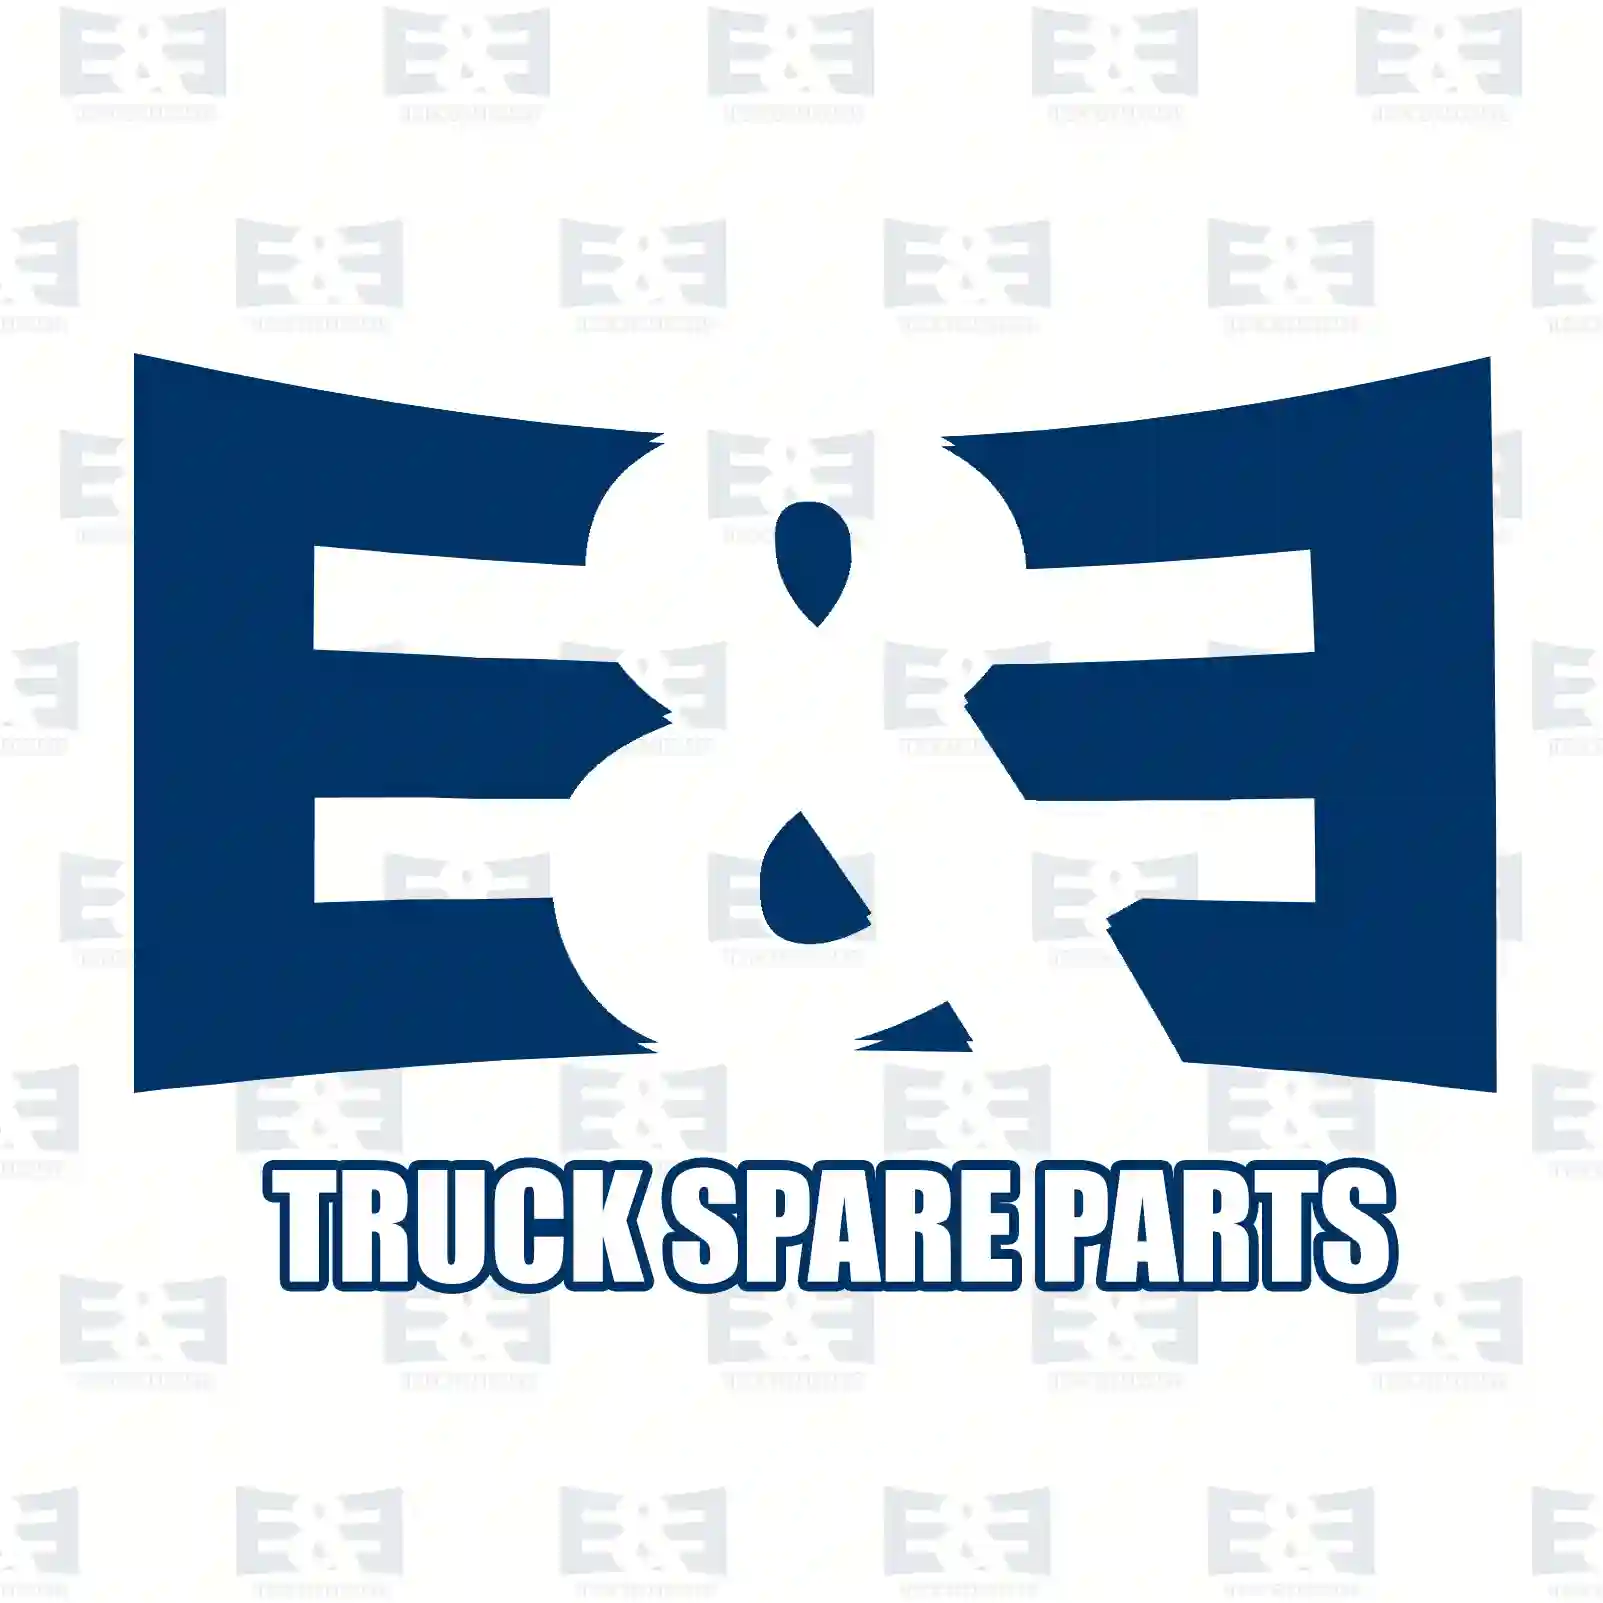 Gear shift rod, 2E2277177, 1746644, 2147948, ZG30547-0008 ||  2E2277177 E&E Truck Spare Parts | Truck Spare Parts, Auotomotive Spare Parts Gear shift rod, 2E2277177, 1746644, 2147948, ZG30547-0008 ||  2E2277177 E&E Truck Spare Parts | Truck Spare Parts, Auotomotive Spare Parts